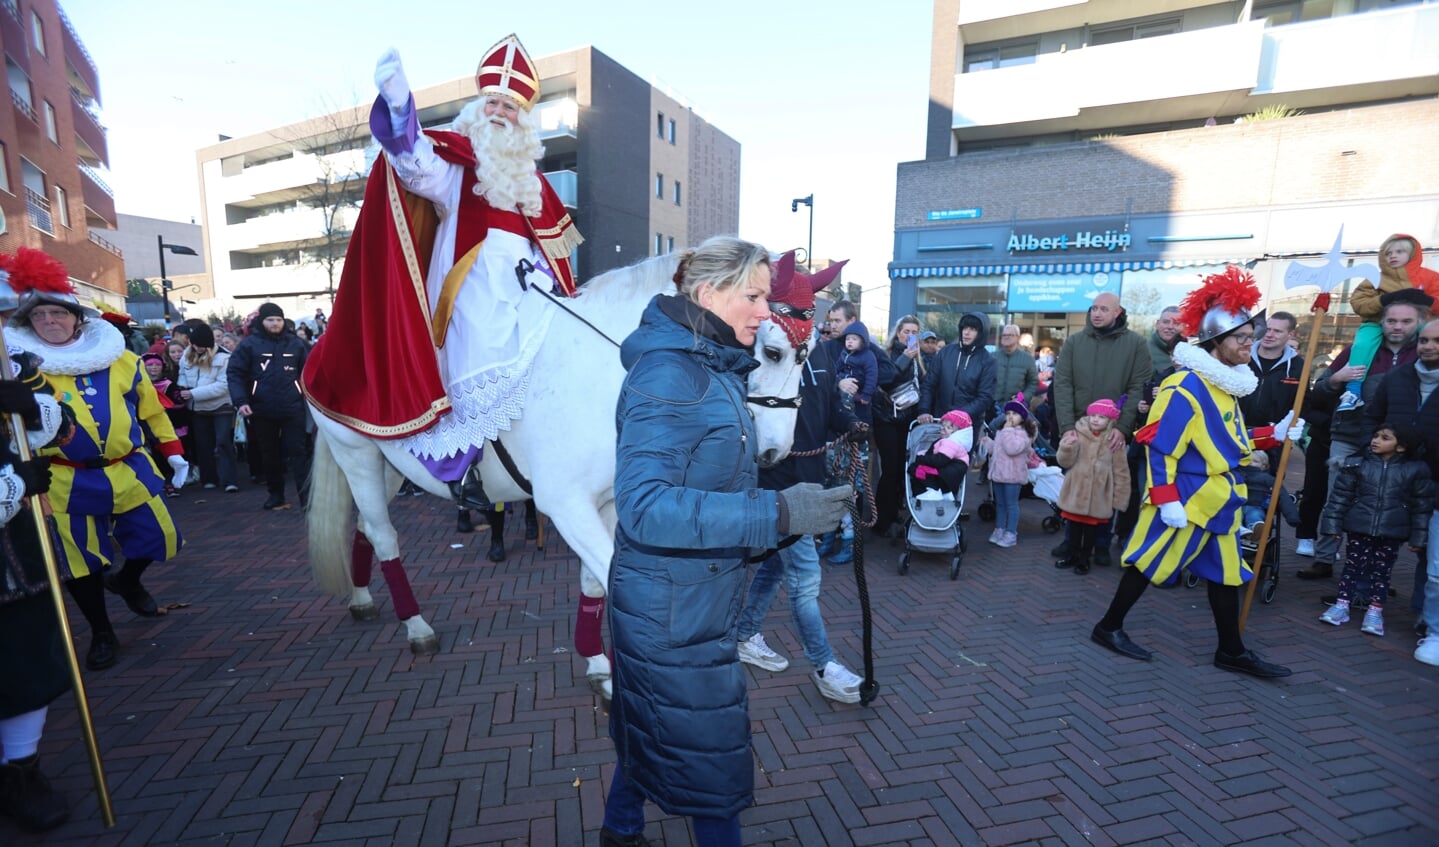 Sinterklaasintocht Almere Buiten. (Foto: Fred Rotgans)